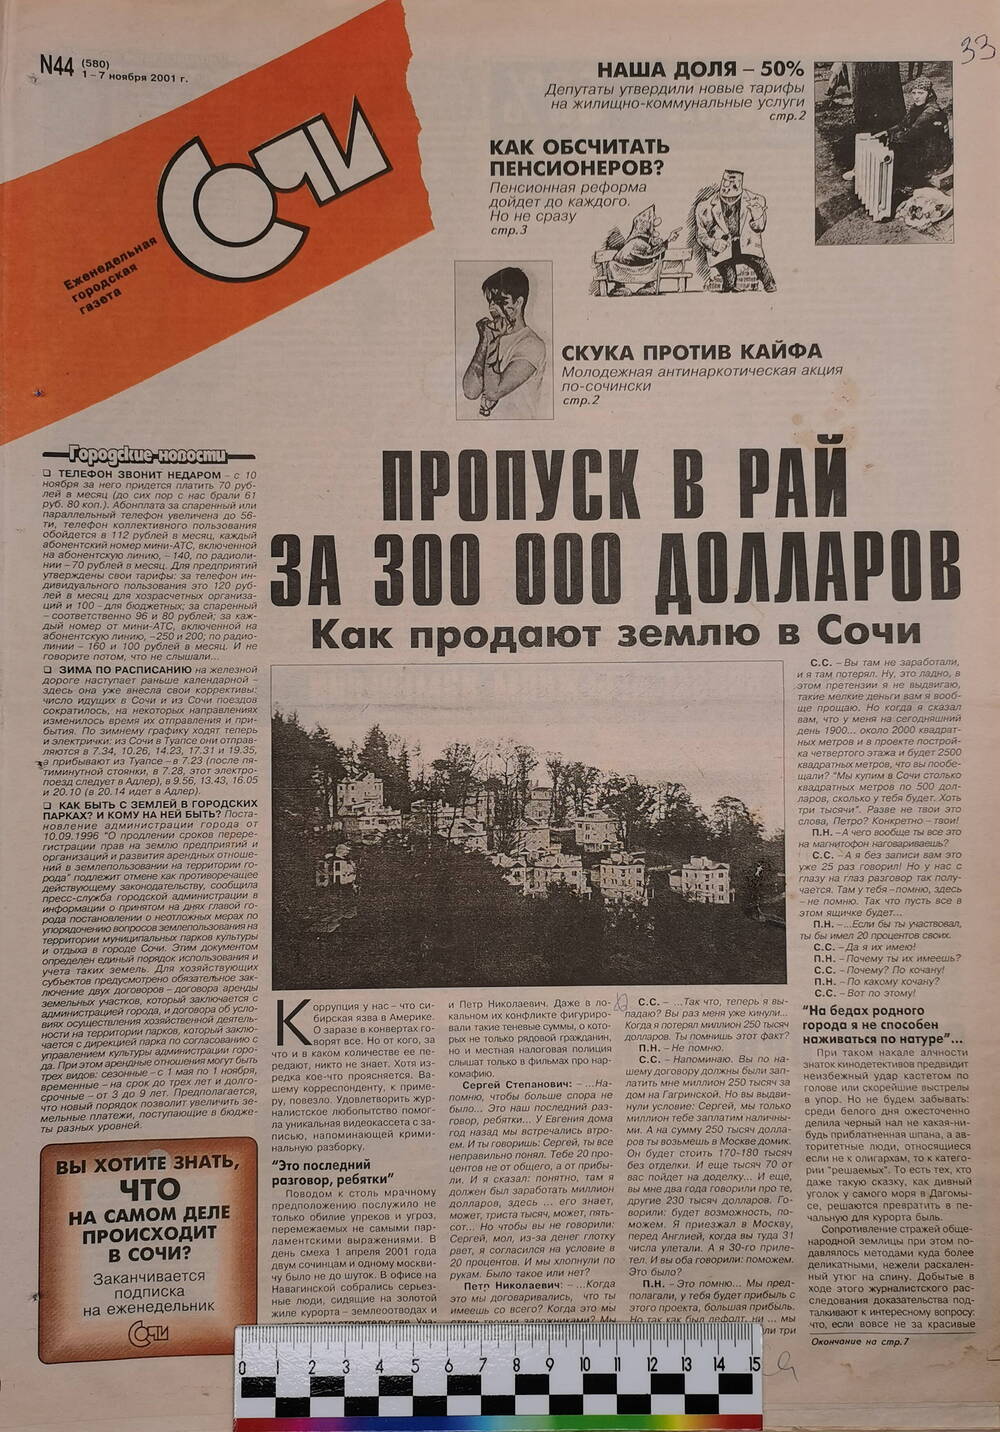 Газета еженедельная городская «Сочи» № 44 (580) с 1 по 7 ноября 2001 г.